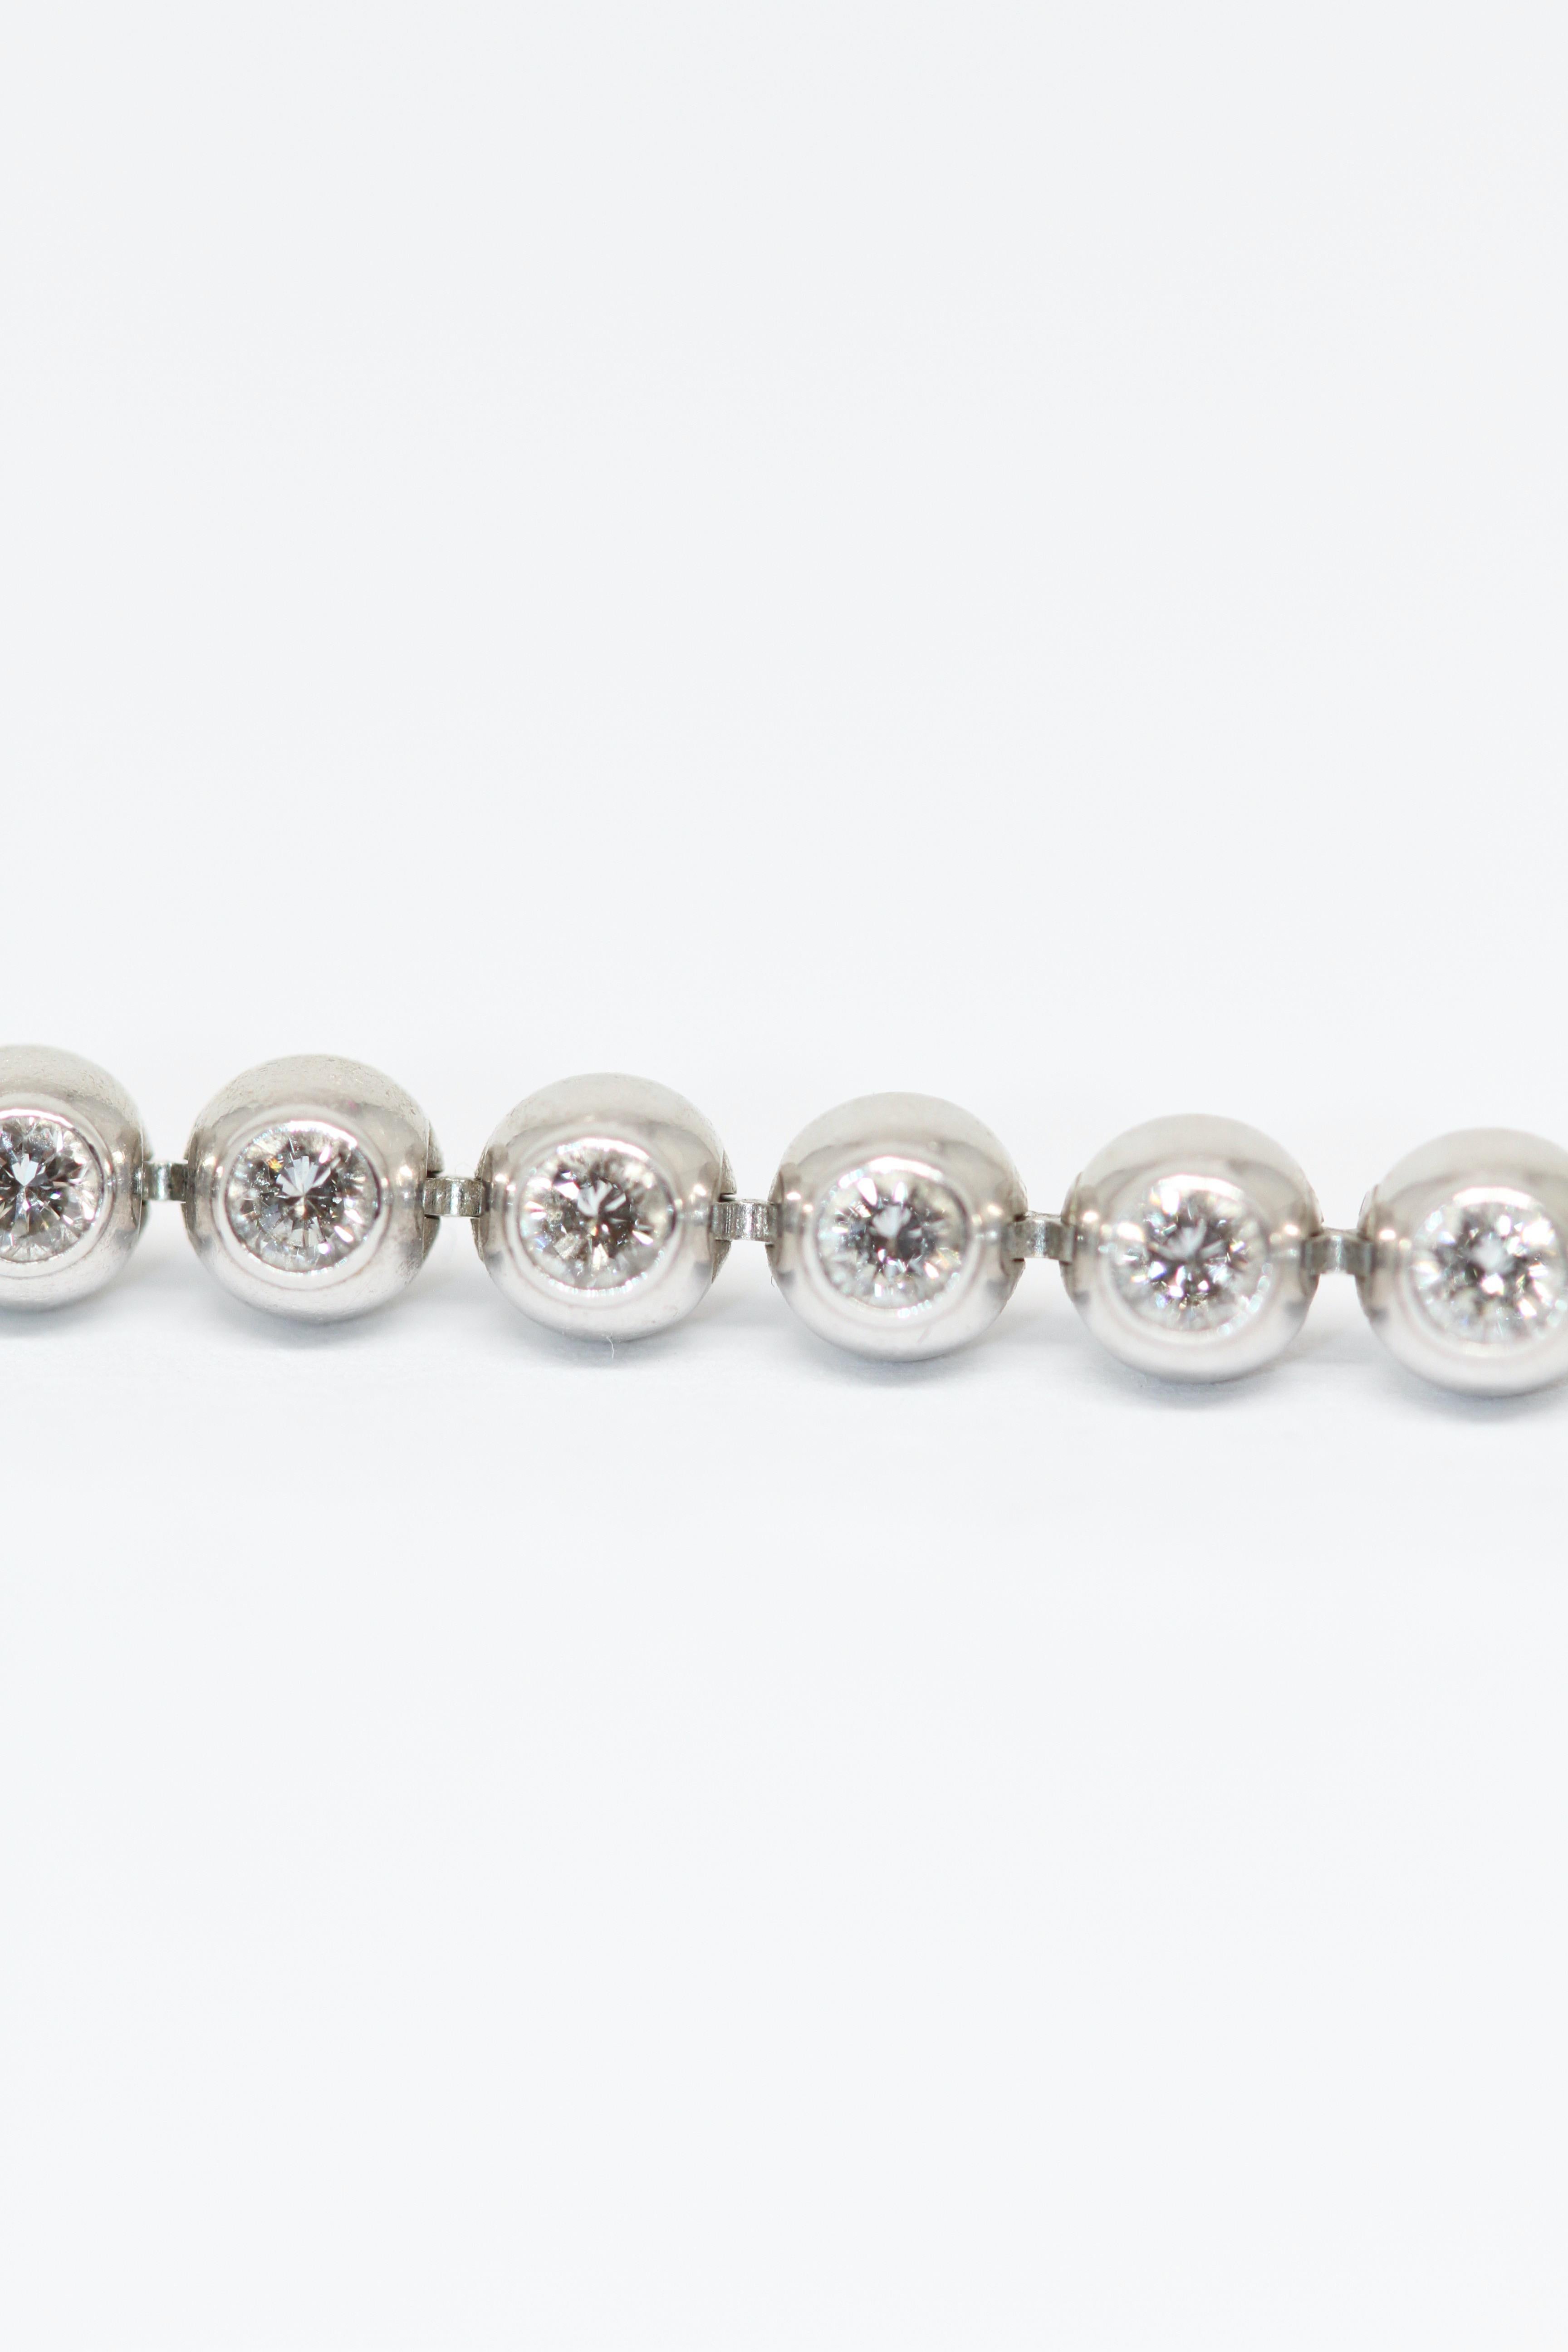 Cartier 18k White Gold Diamonds Perles De Diamants Tennis Bracelet For Sale 1